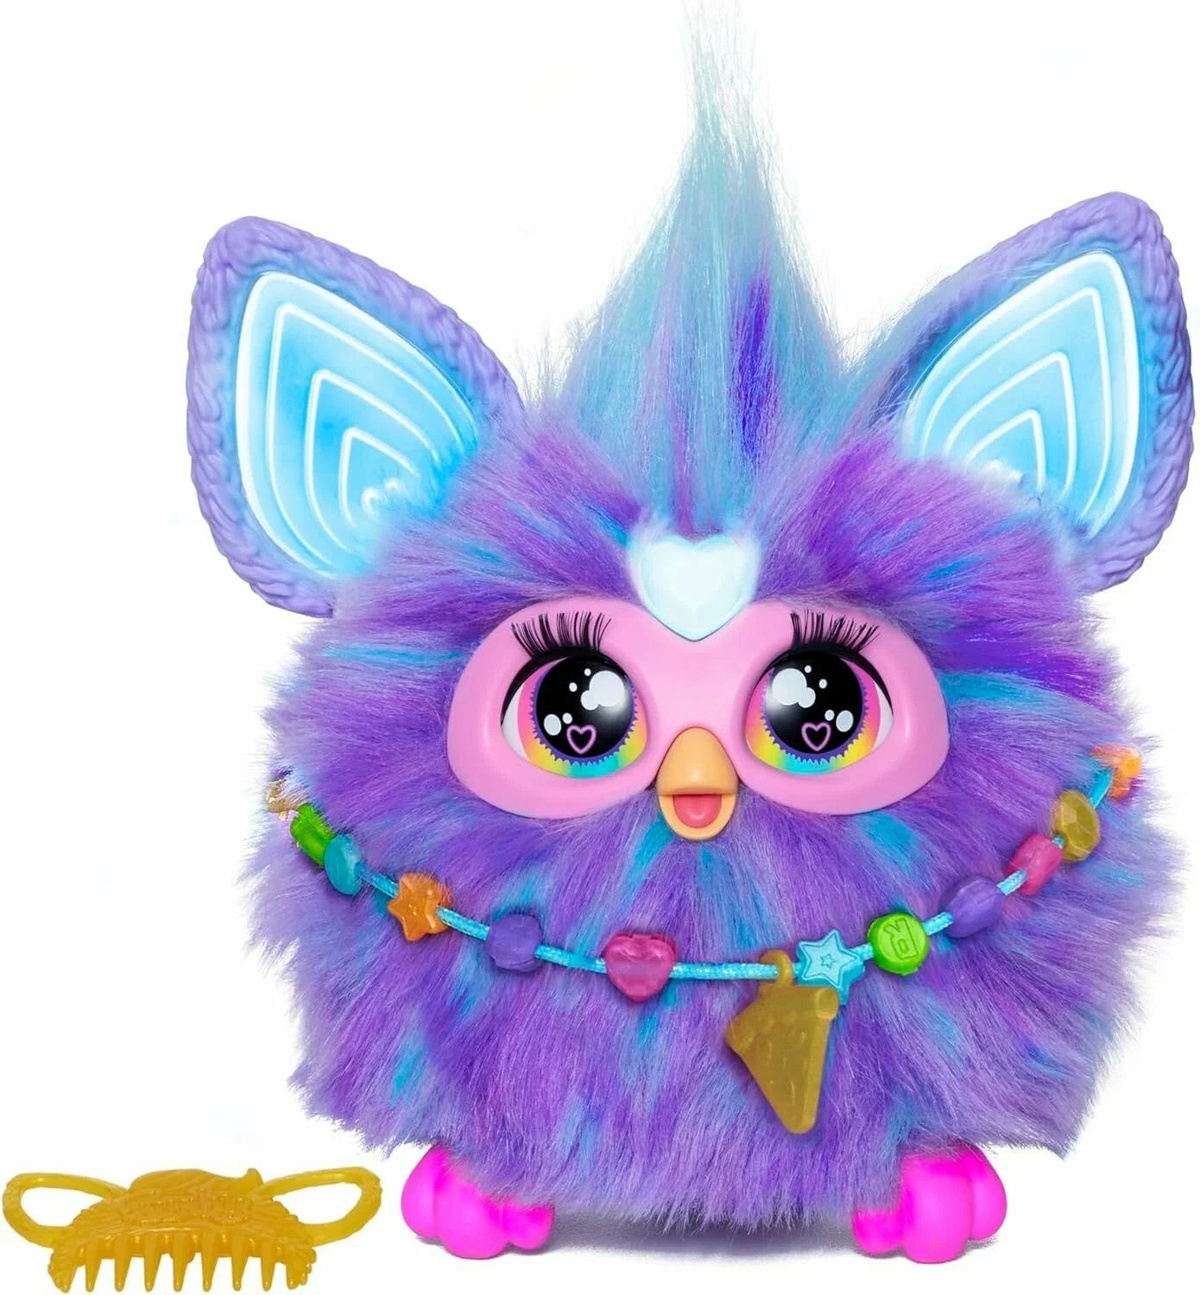 Интерактивная игрушка Furby: Познакомьтесь с Фёрби! Это маленькое любопытное существо - невероятно интерактивный игрушечный друг с 5 режимами голосовой активации и более чем 600 фразами, шутками, песнями и многим другим